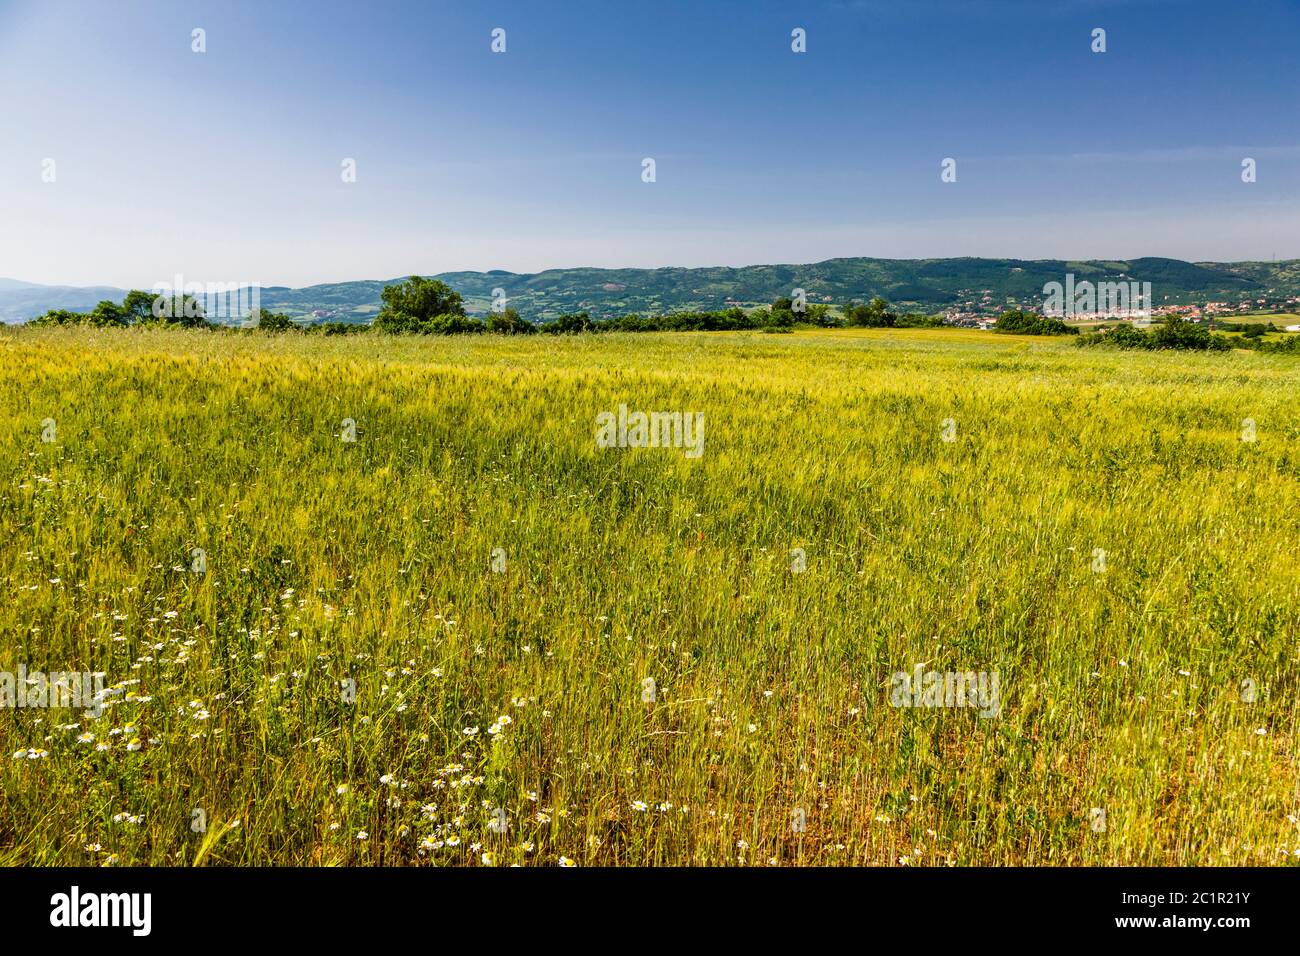 Paesaggio della regione della Macedonia, campi di grano della regione della Macedonia, sobborgo di Serres, Macedonia centrale, Grecia, Europa Foto Stock